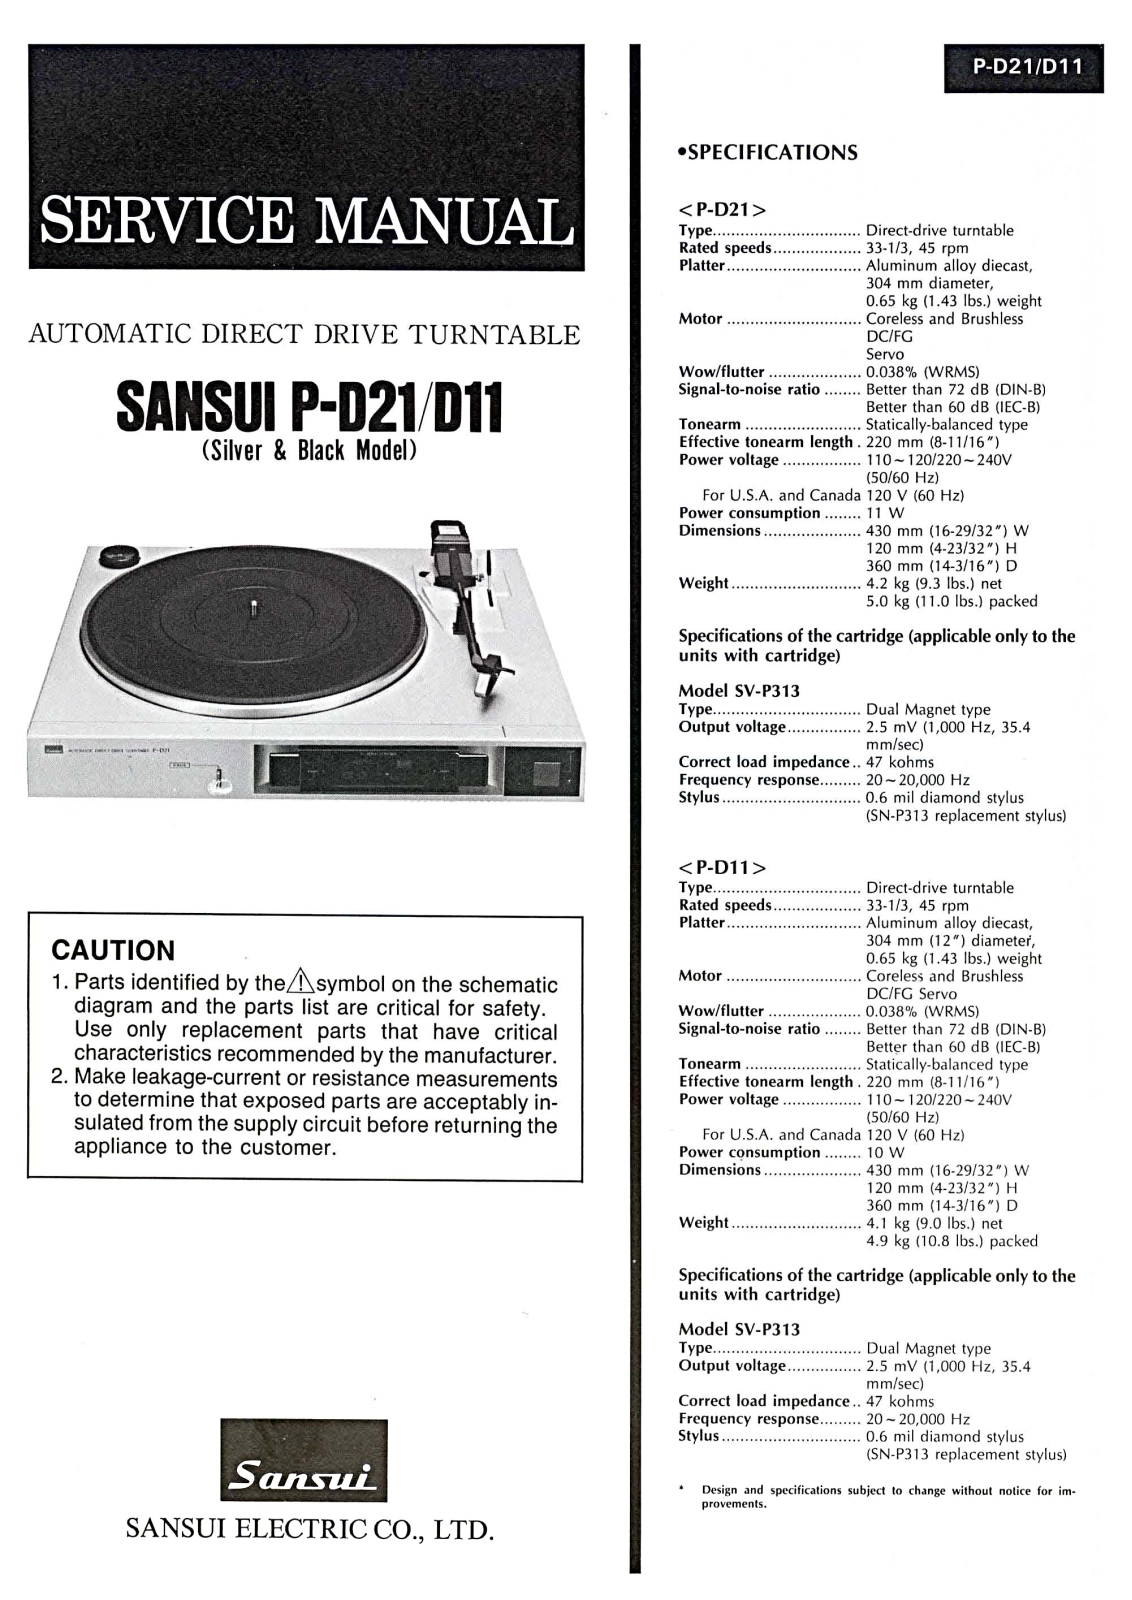 Sansui P-D21, P-D11 Service Manual